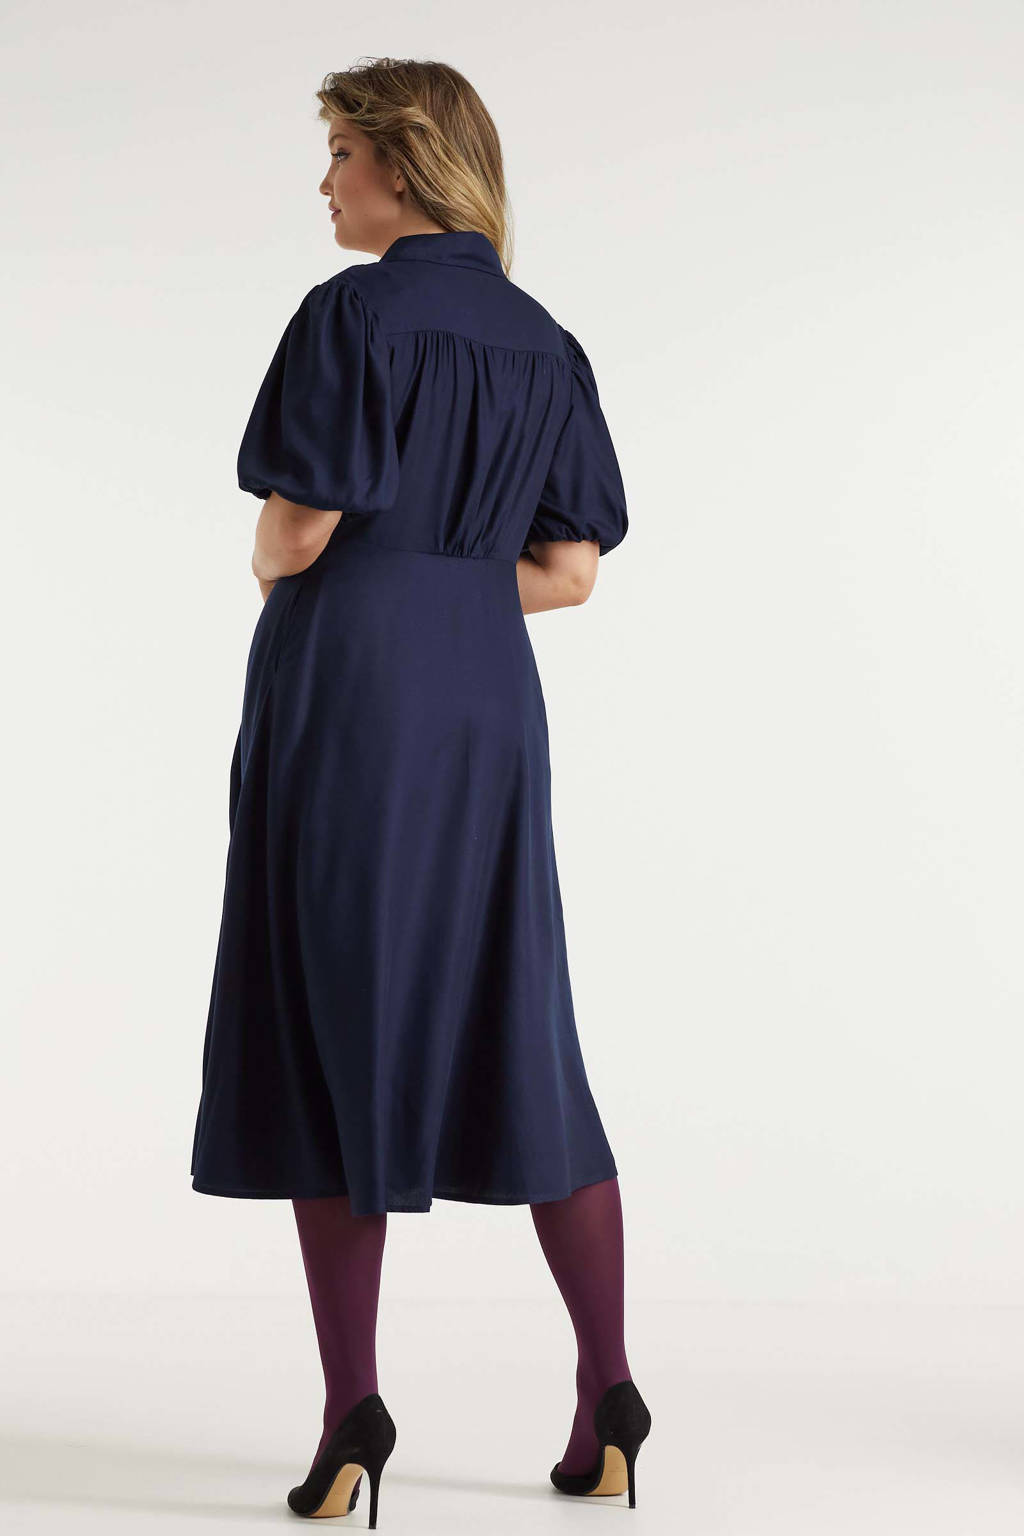 Smash nietig Visser Miljuschka by Wehkamp vintage geïnspireerde jurk met knopen donkerblauw |  wehkamp